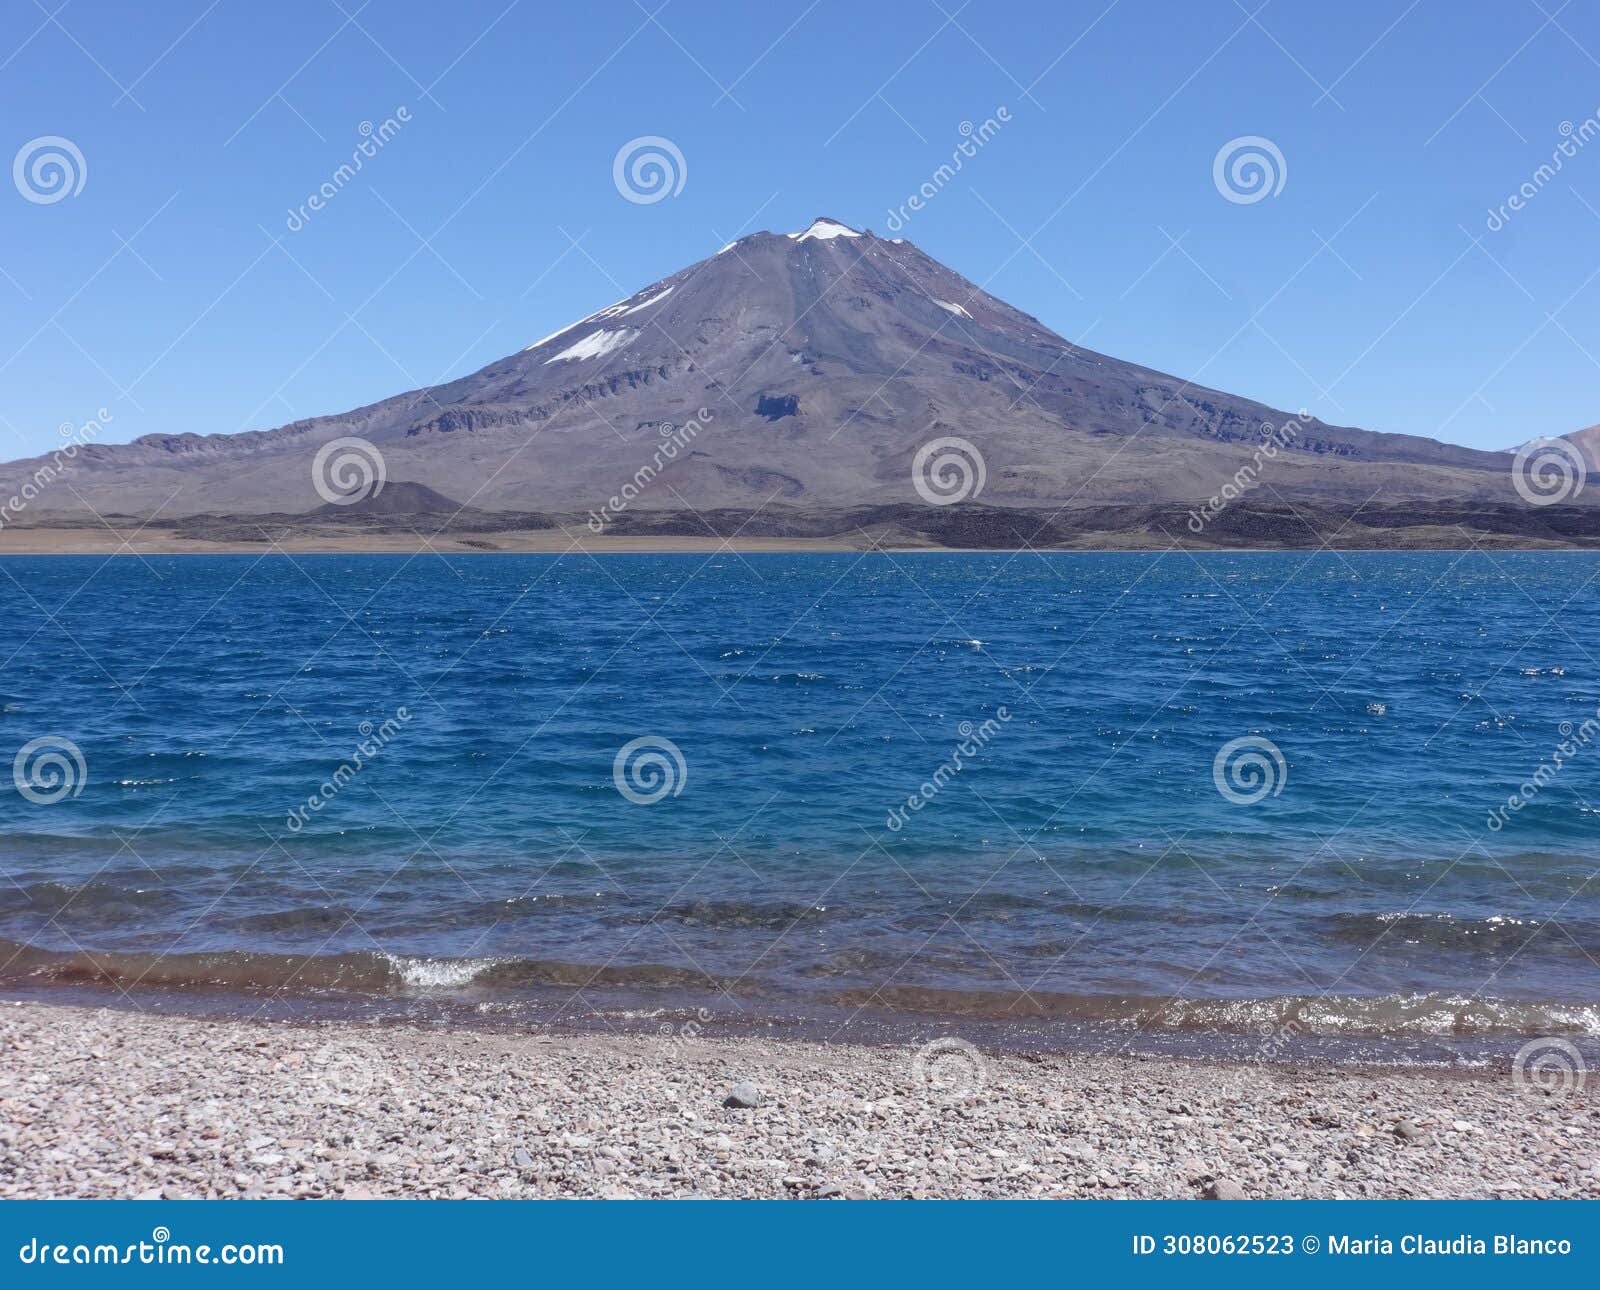 diamante lagoon with maipo volcano in mendoza. argentina